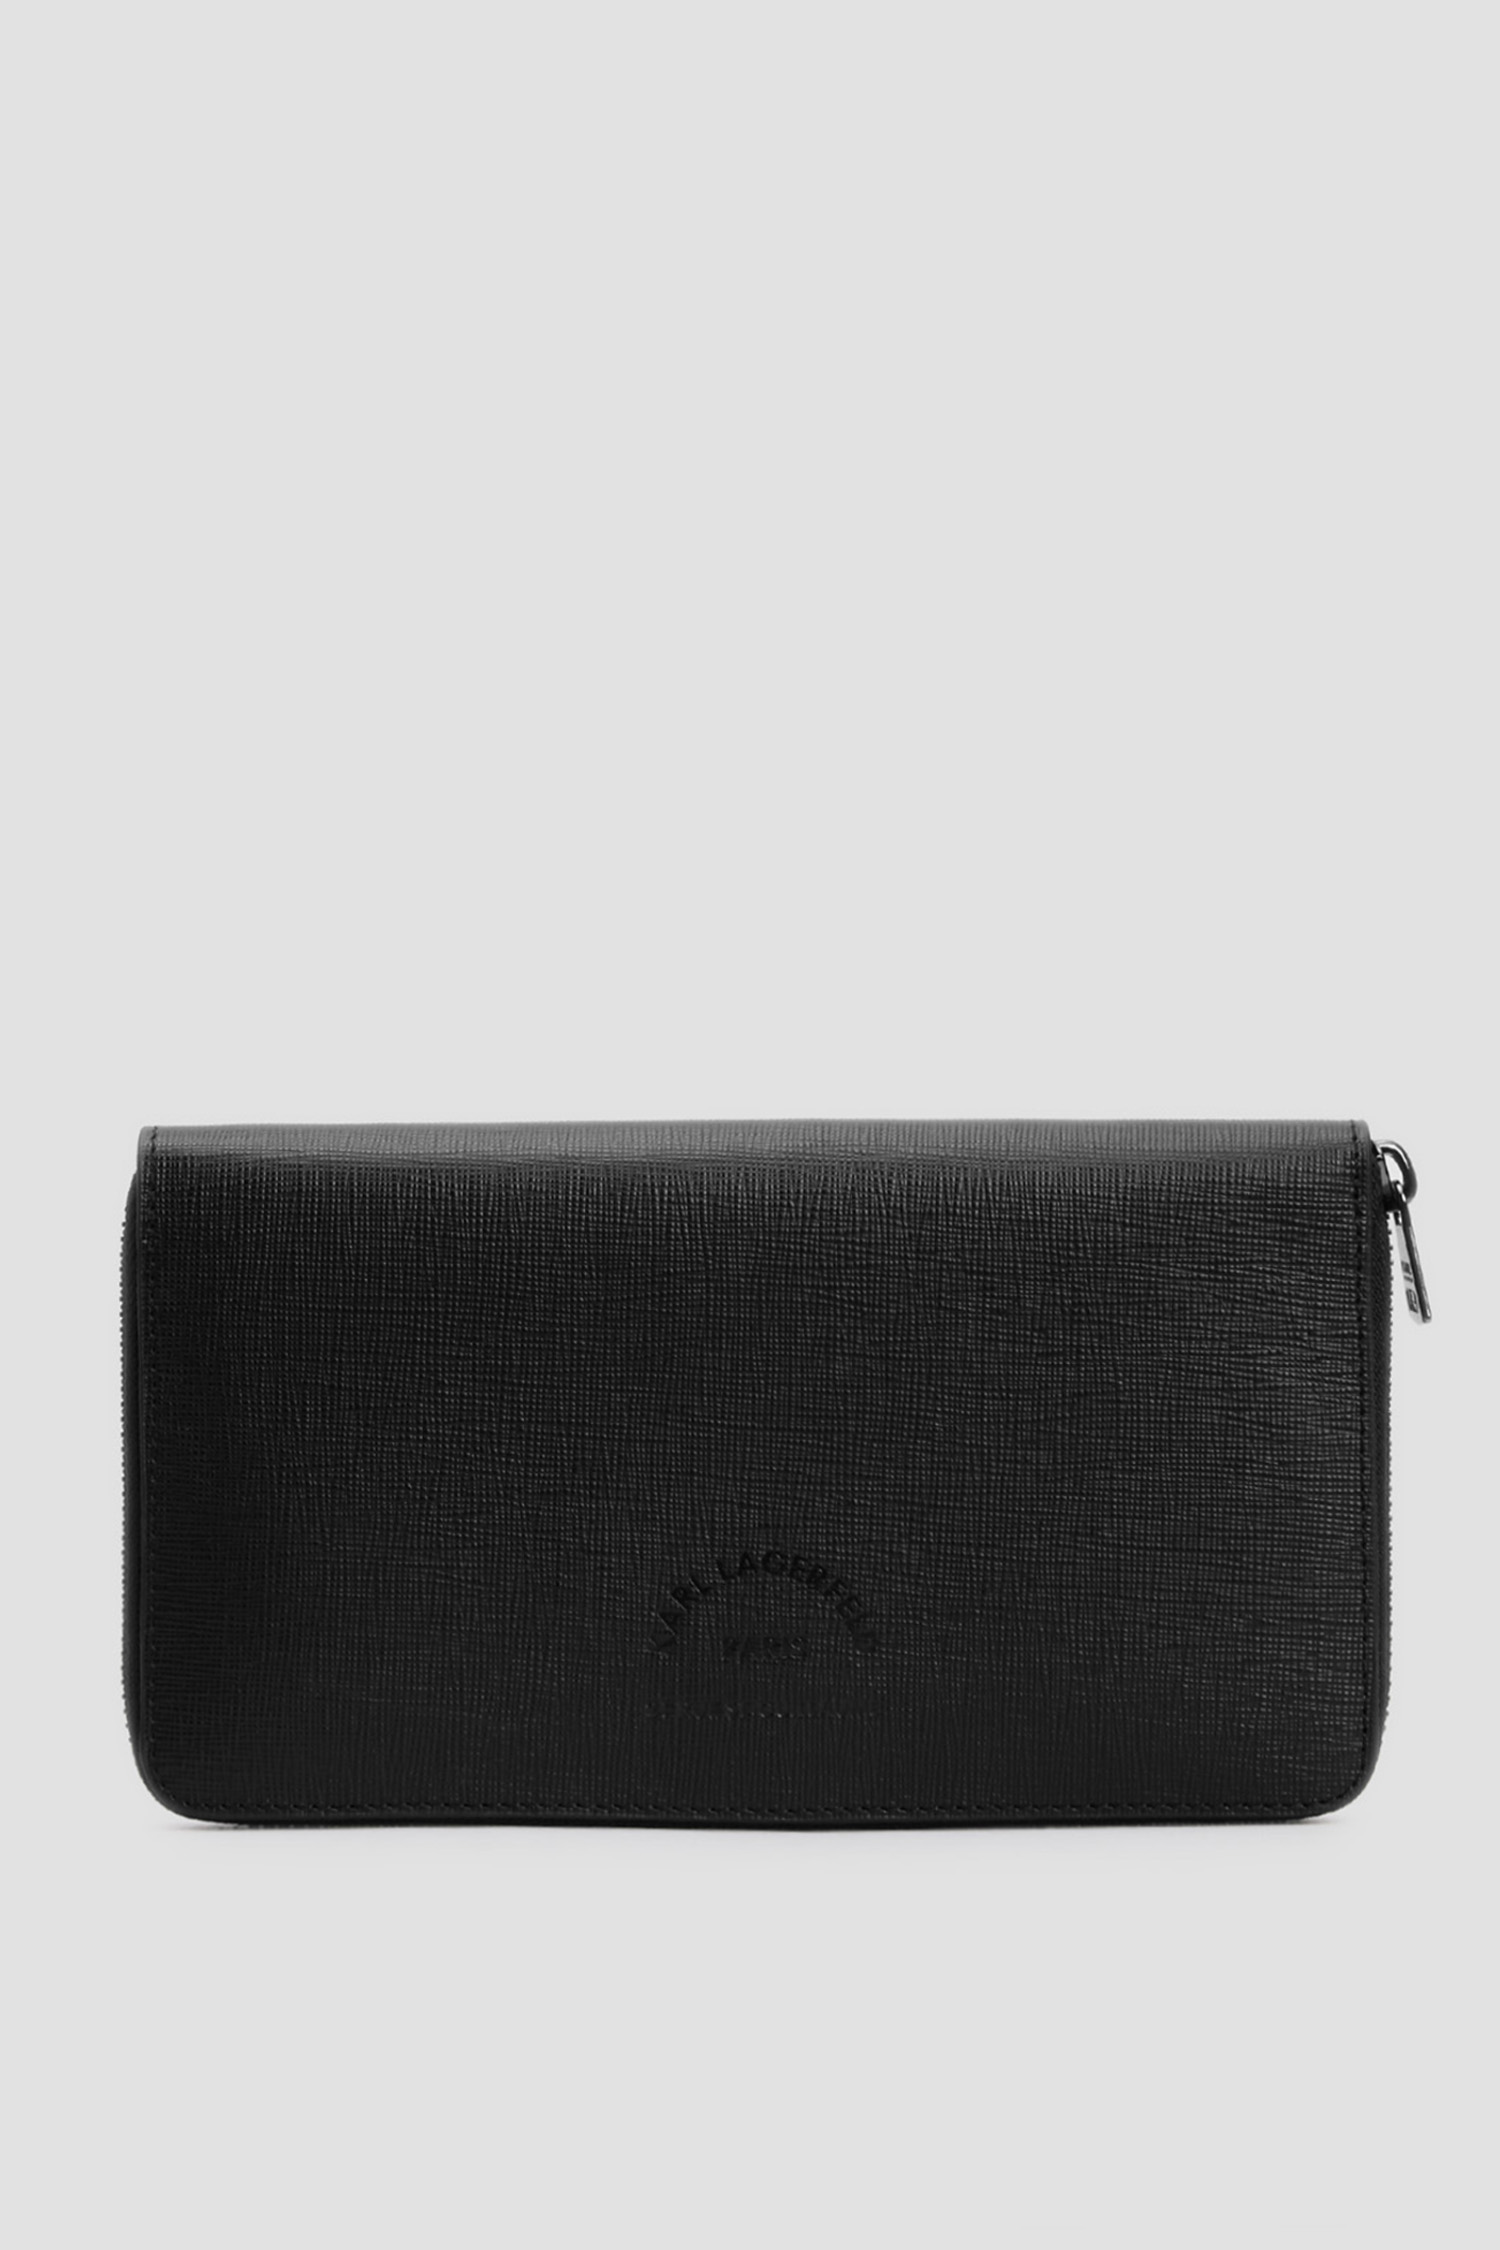 Чорний шкіряний гаманець для хлопців Karl Lagerfeld 511452.815414;990